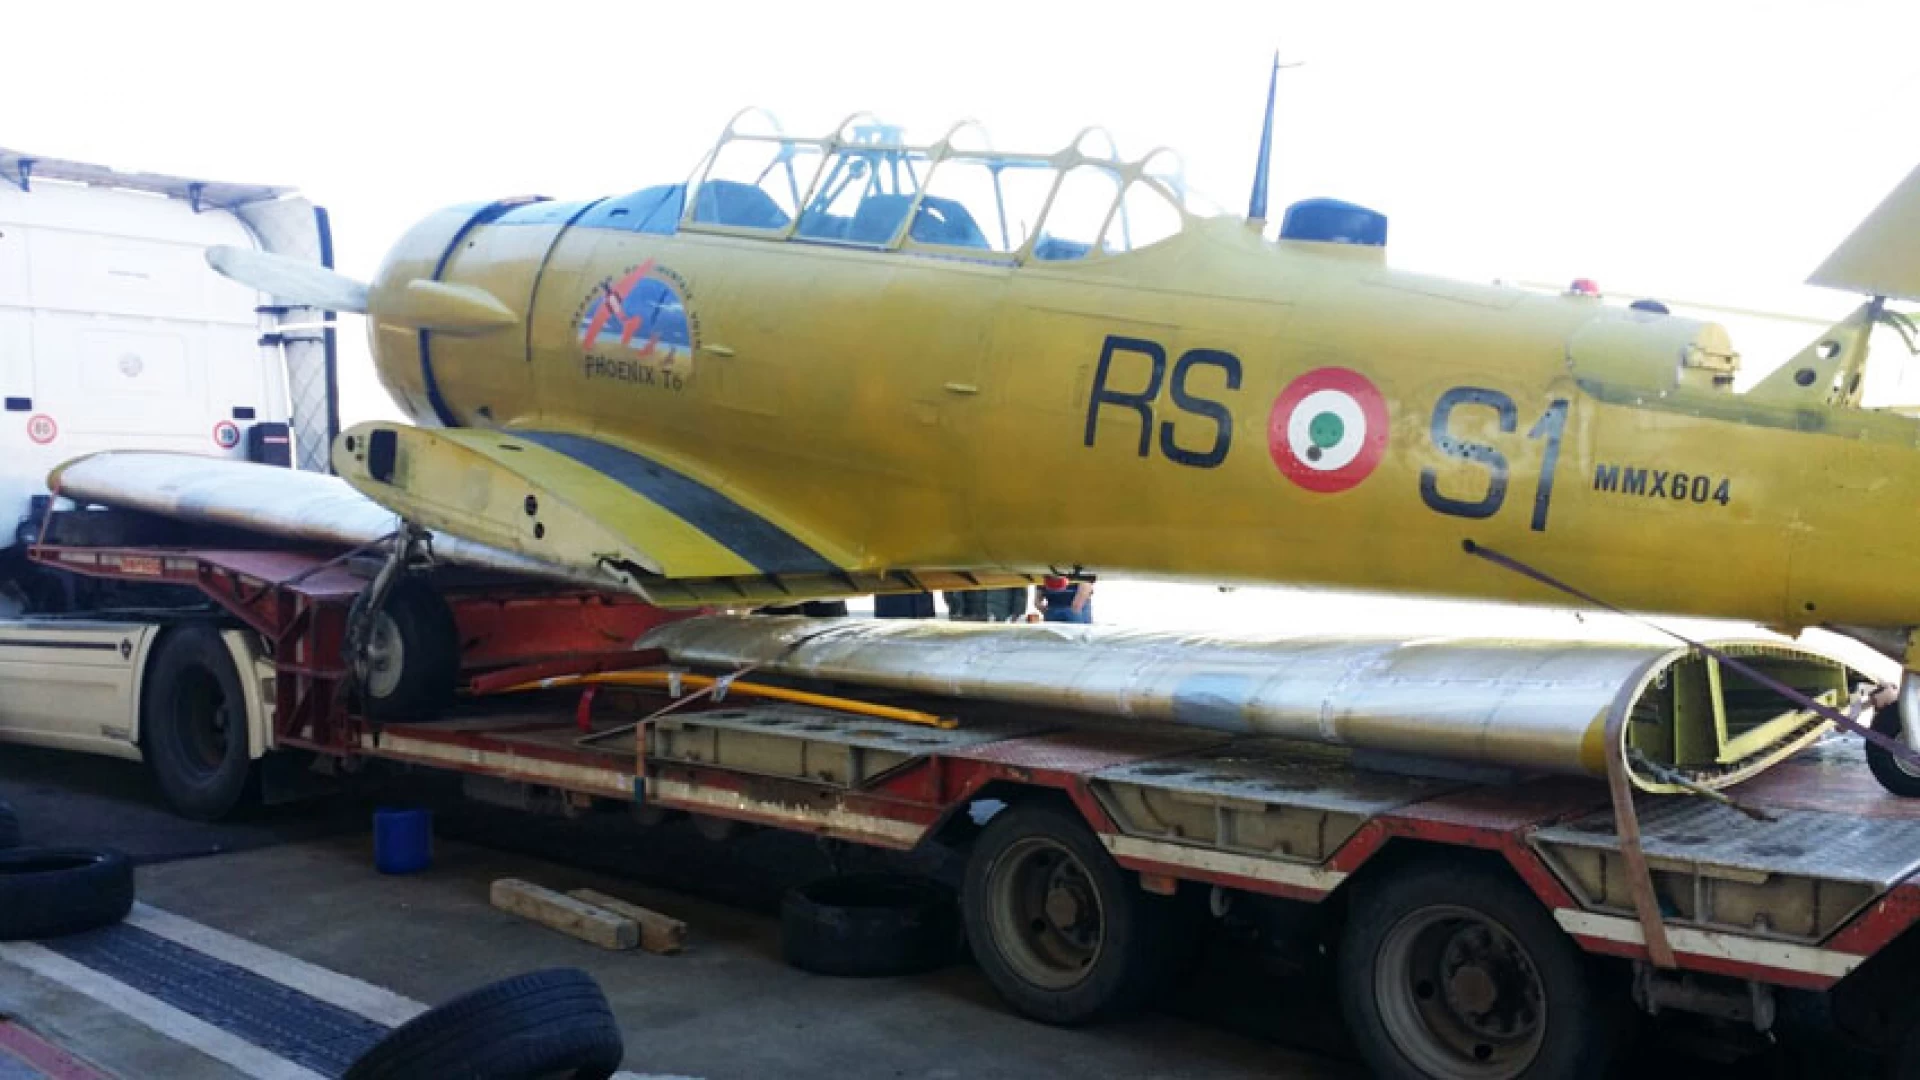 Rocchetta a Volturno: il T6 è in viaggio verso il Museo Internazionale delle Guerre Mondiali. L’aereo sistemato nel parco mezzi.